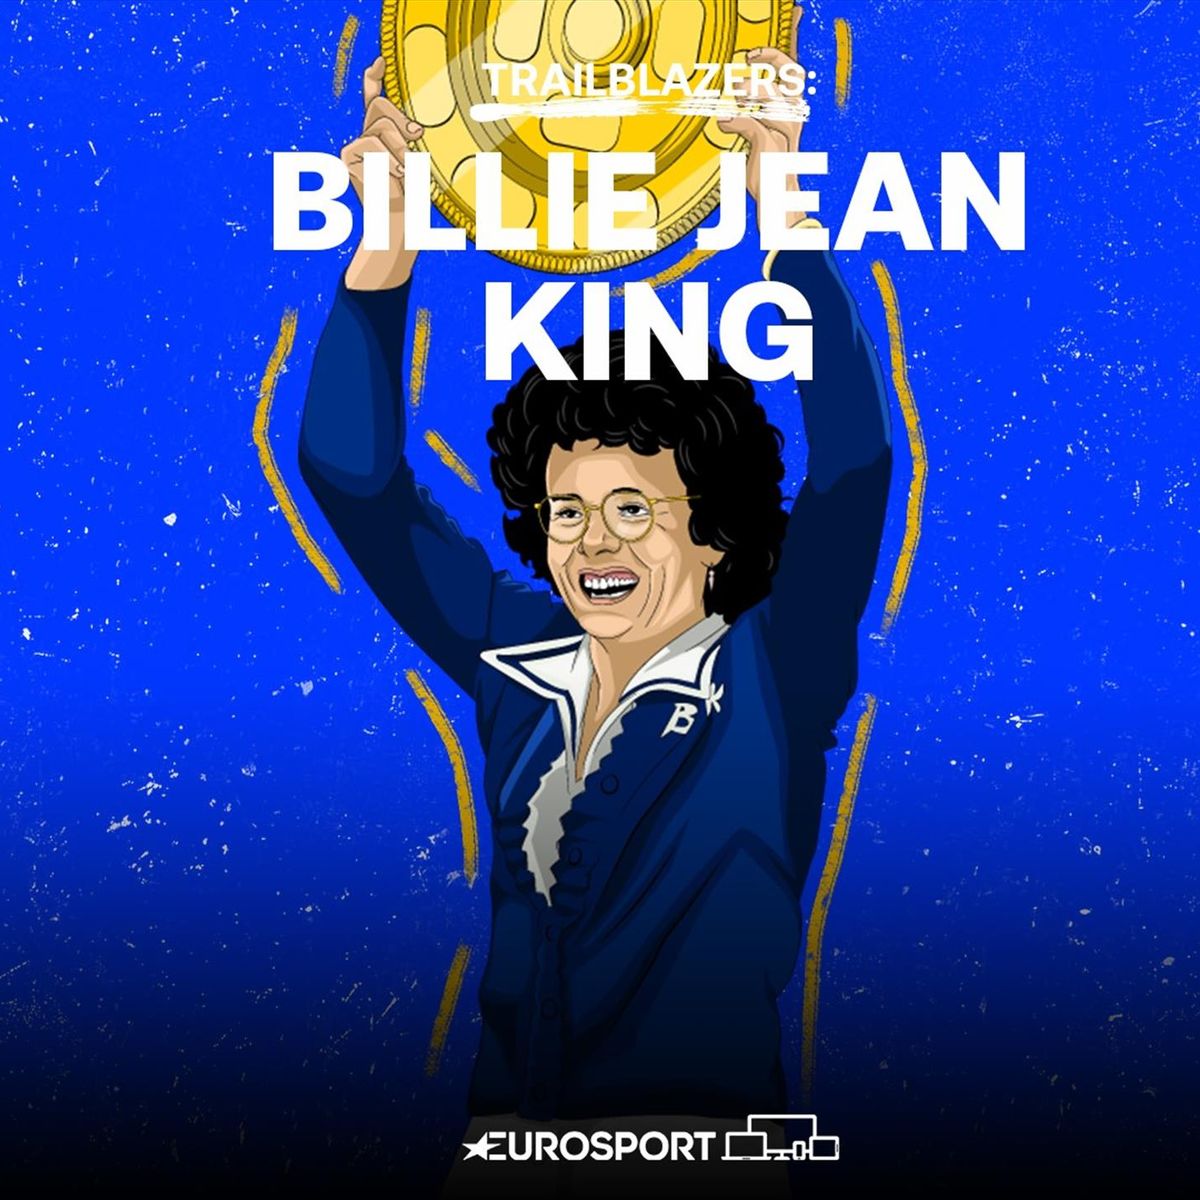 Trailblazers - Billie Jean King: A stunning champion defined by off-court  activism - Tennis video - Eurosport